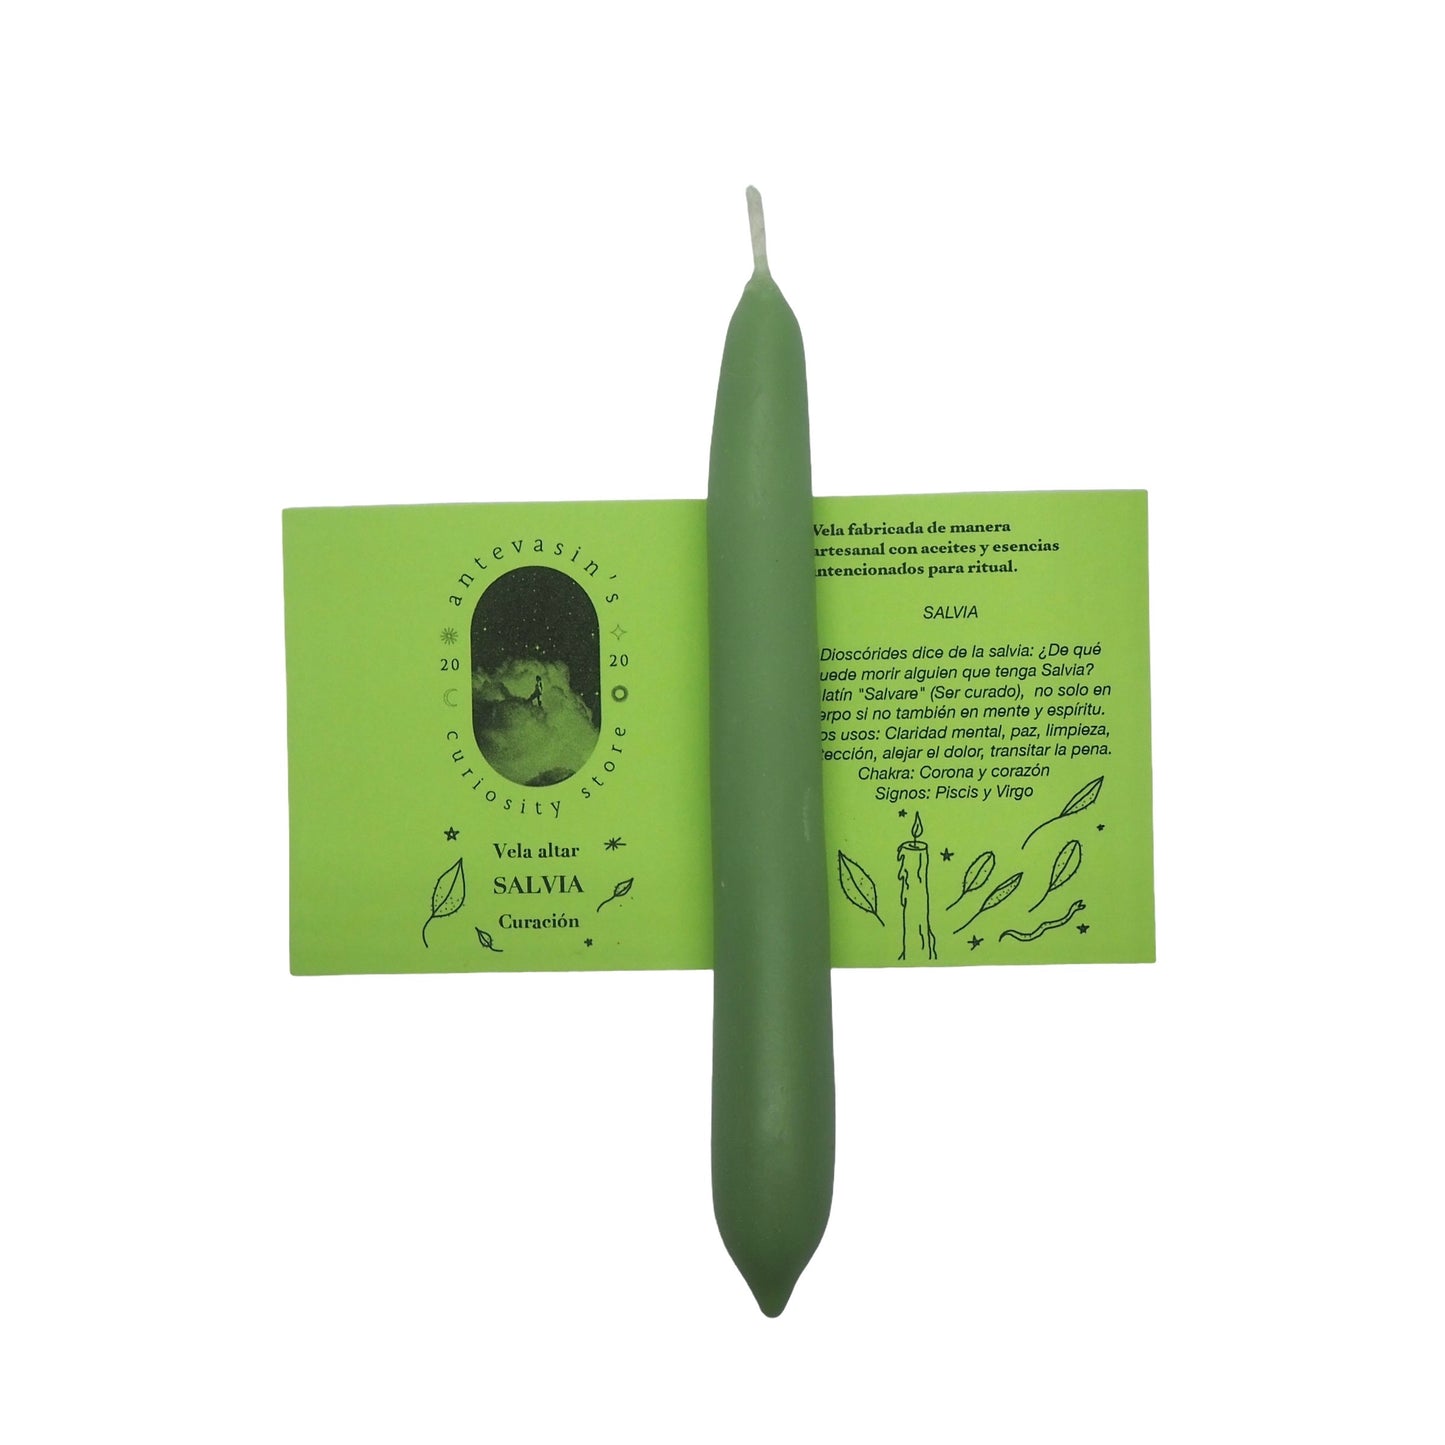 Vela ritual verde SALVIA (Curación)  15gr x 13cm